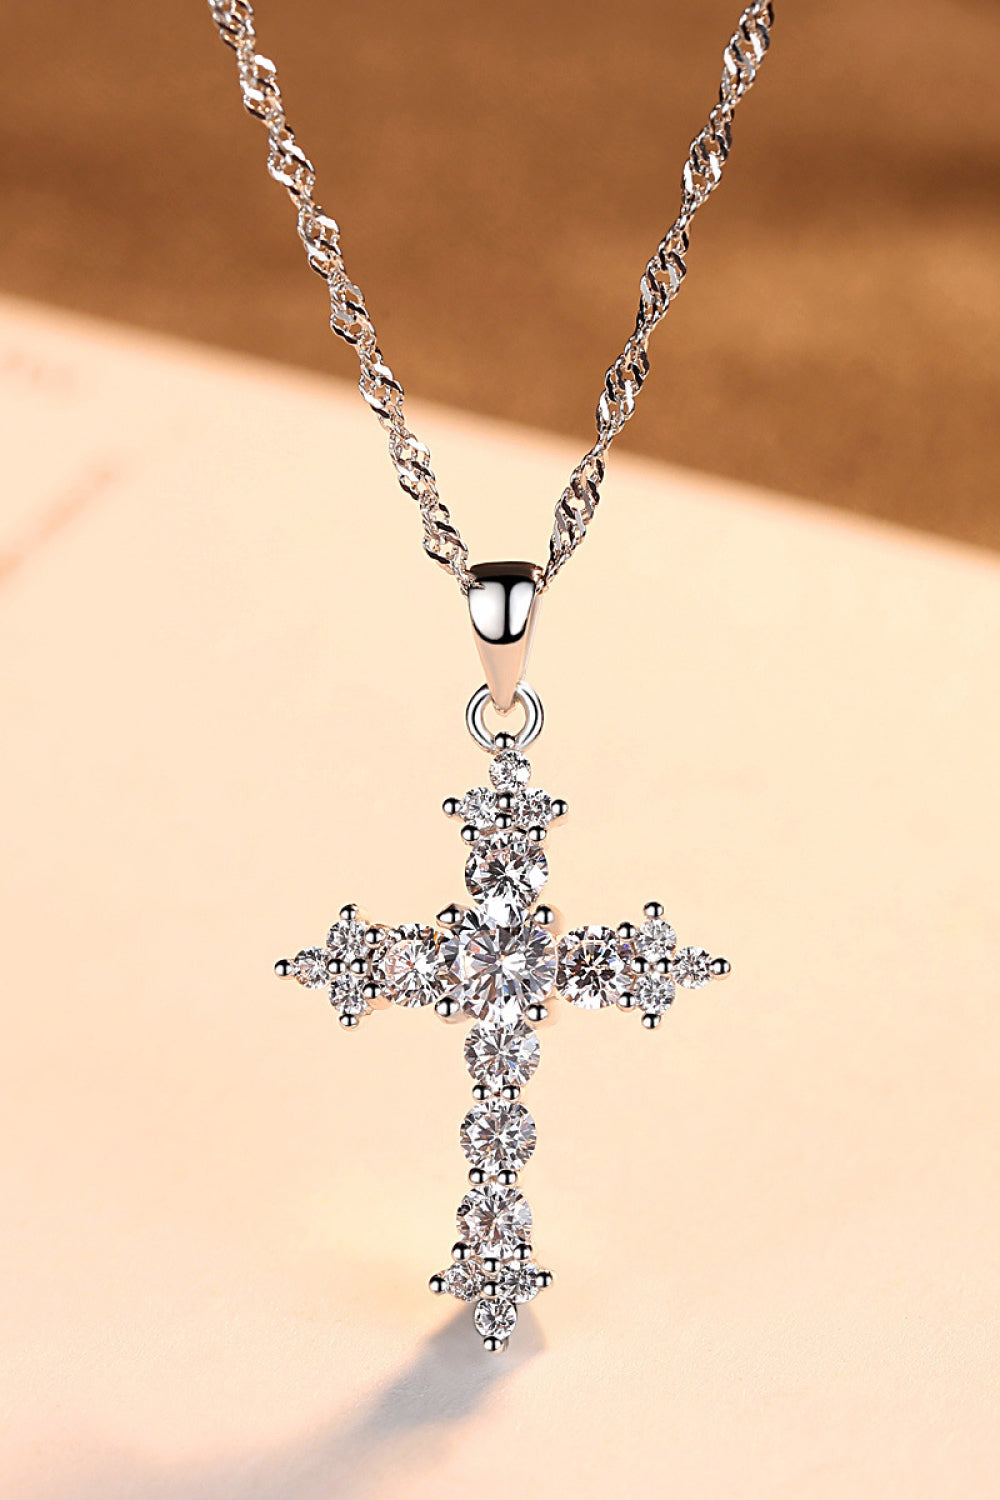 HK Zircon Cross Pendant  Sterling Silver Necklace